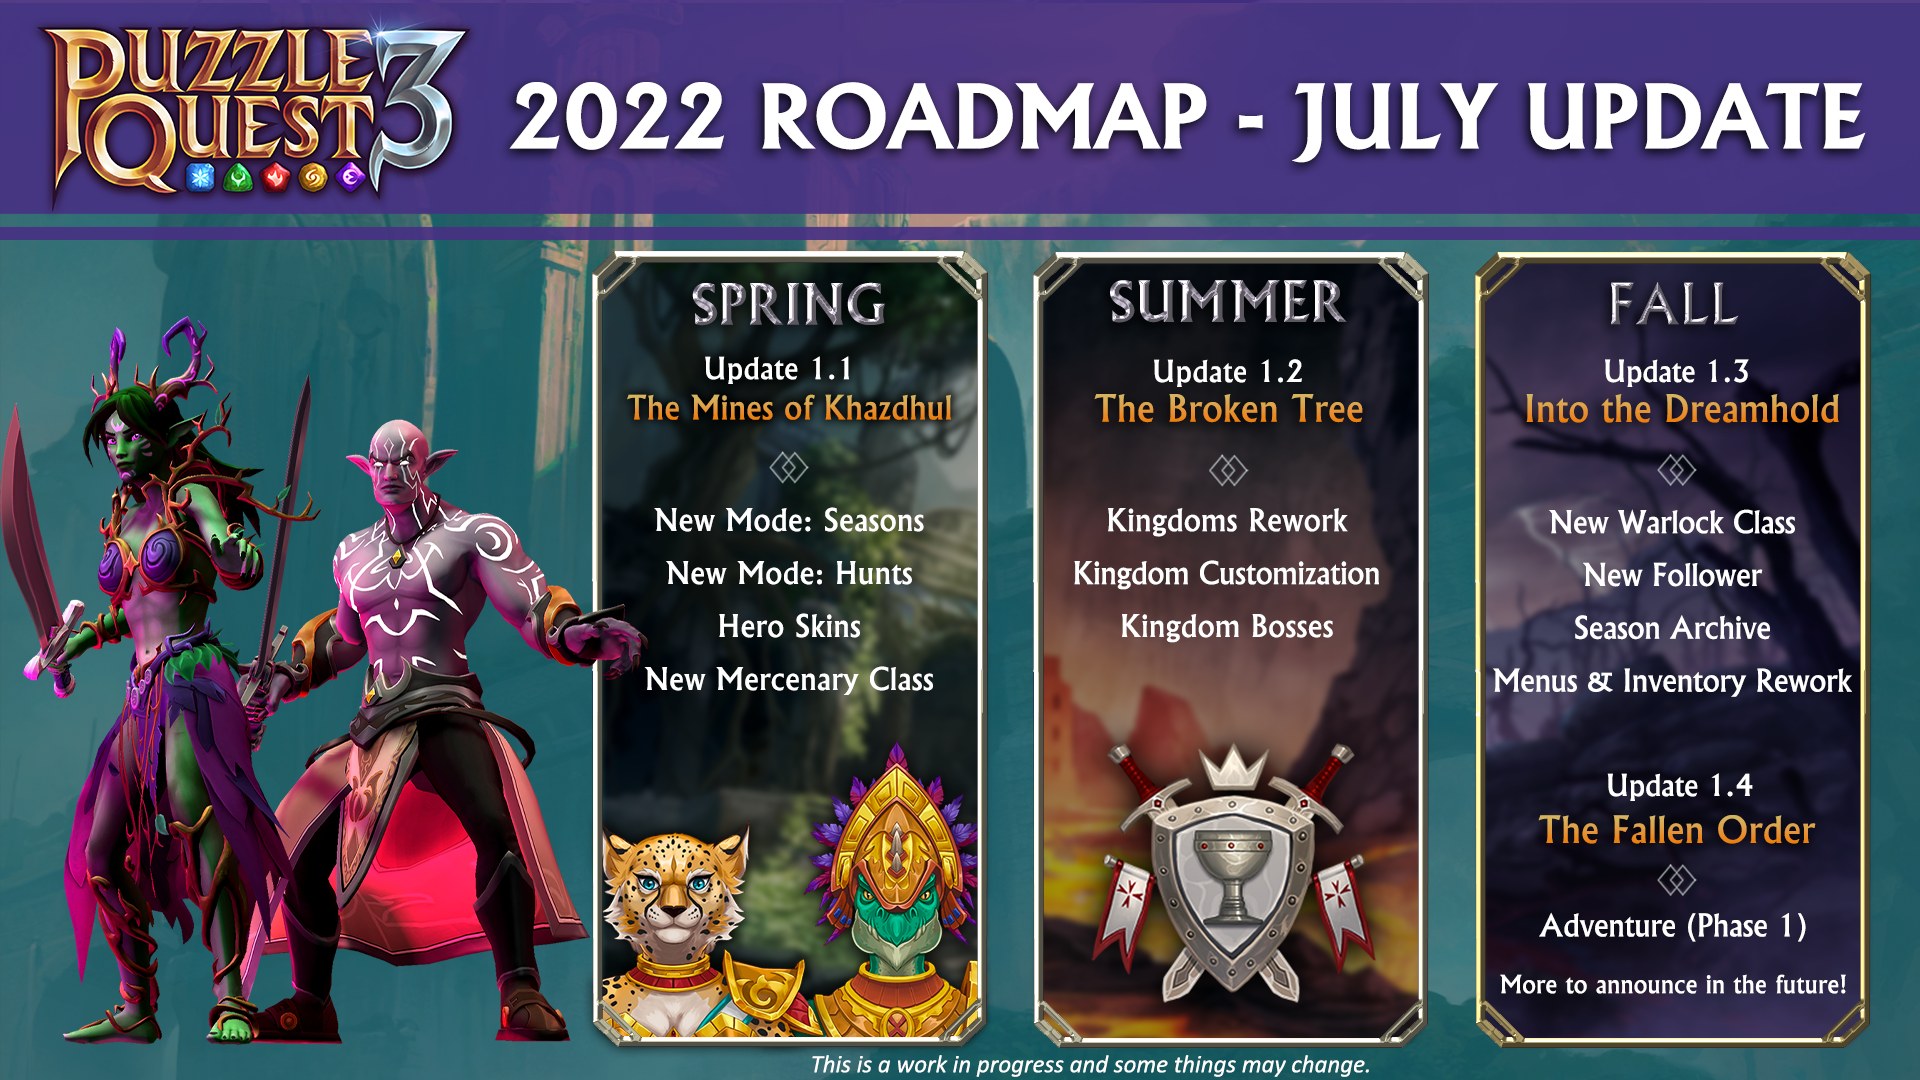 2022 Roadmap - July